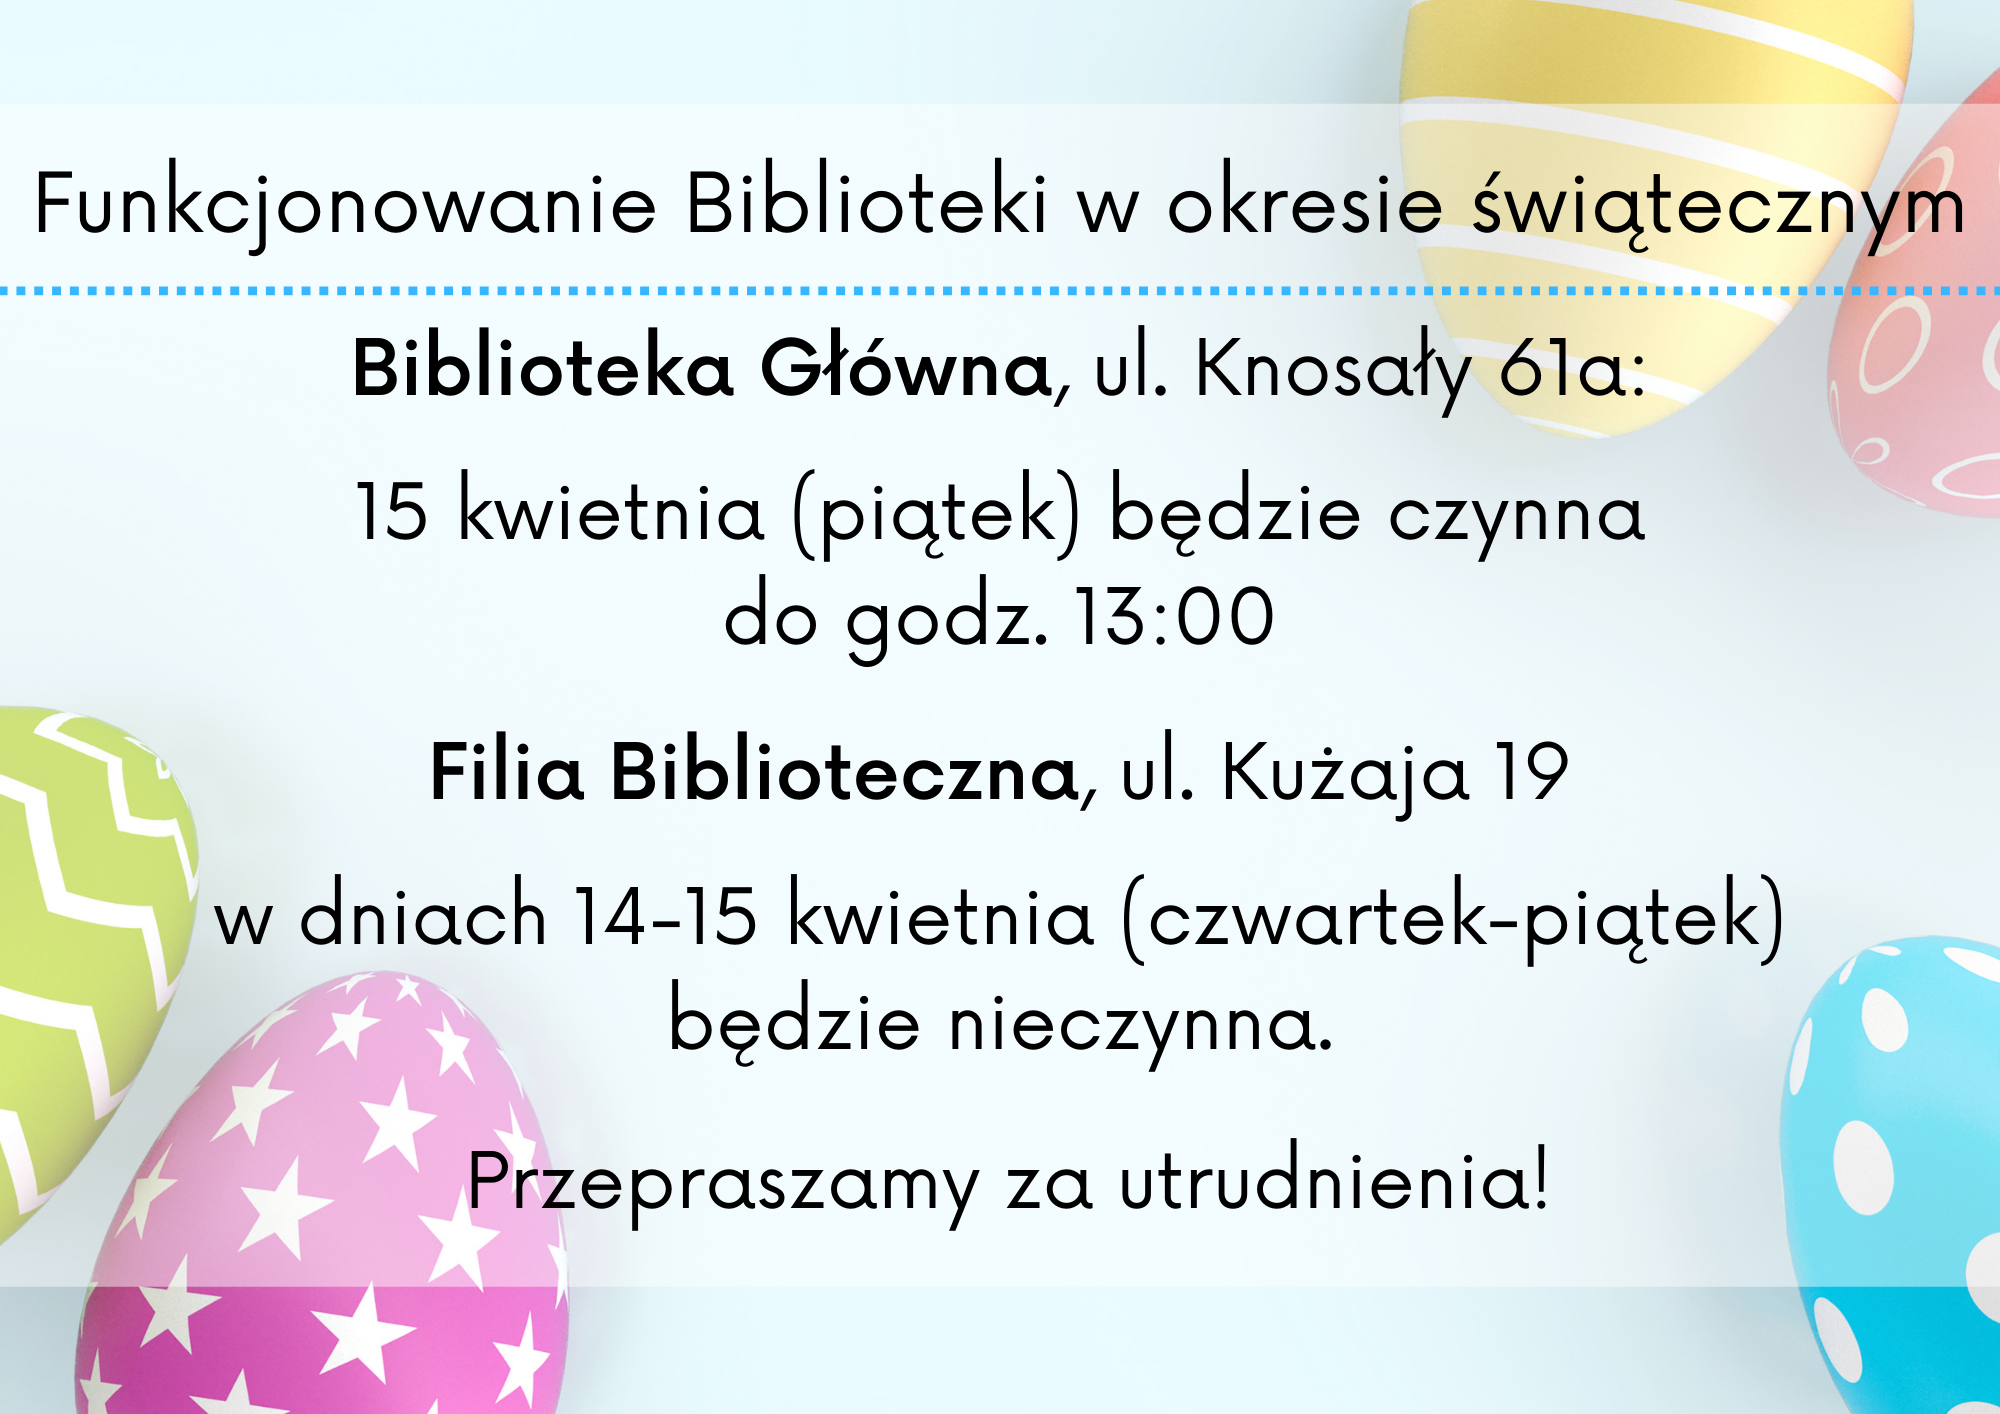 Funkcjonowanie Biblioteki w okresie świątecznym- Biblioteka Główna dnia 15.04.2022 czynna do godziny 13.00. Filia Biblioteczna w dniach 14-15.04.2022 nieczynna.